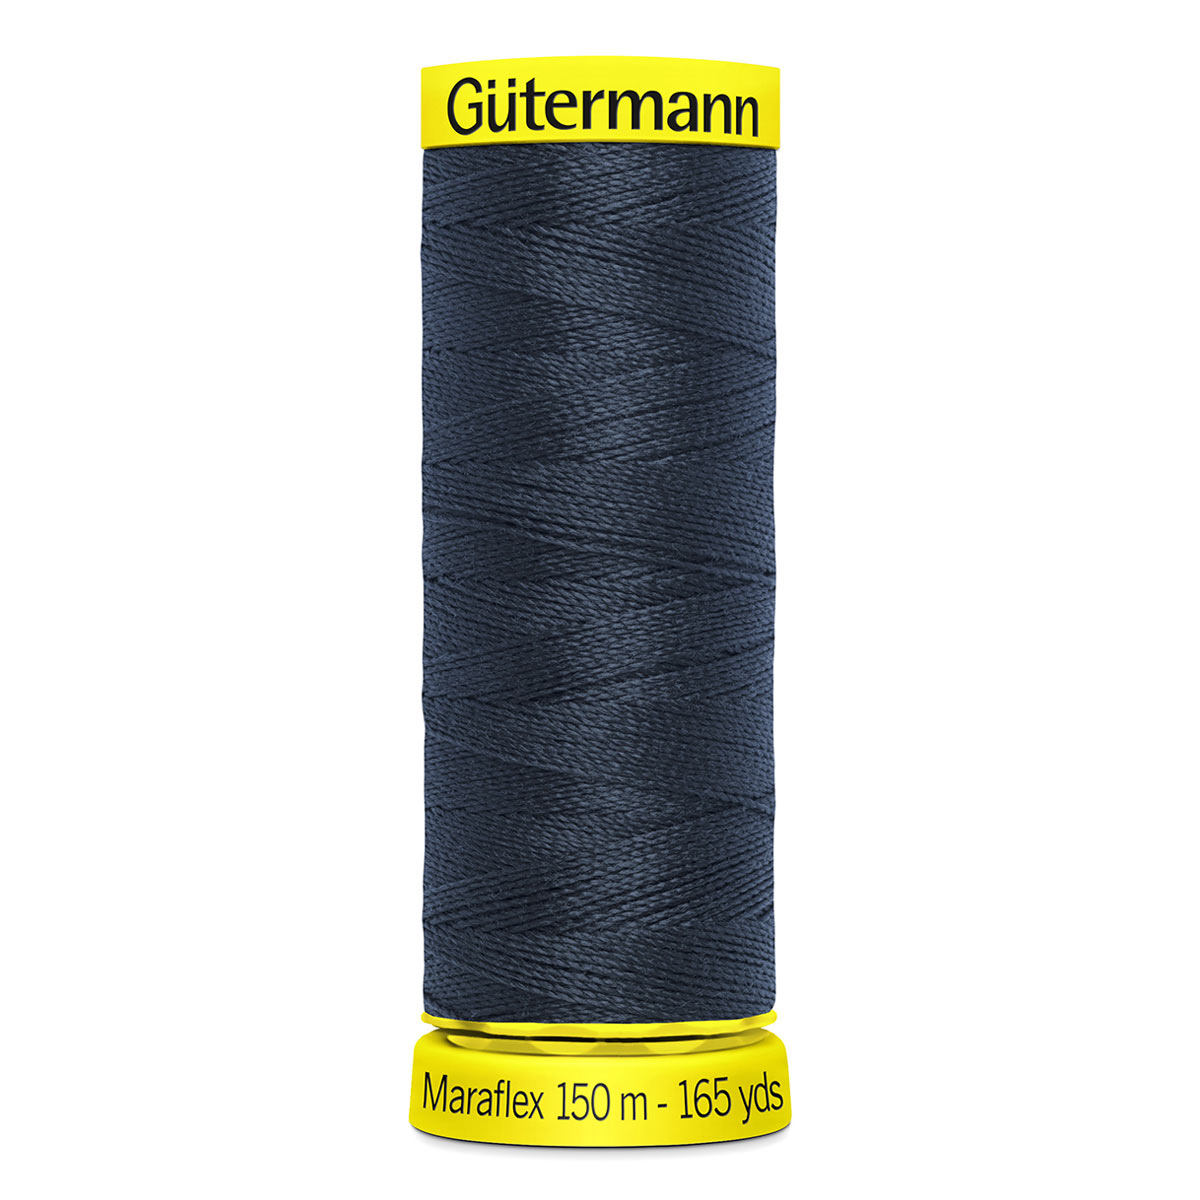 Нить Gutermann Maraflex, 777000, для трикотажных тканей, 150м (665 сине-черный), 5 шт